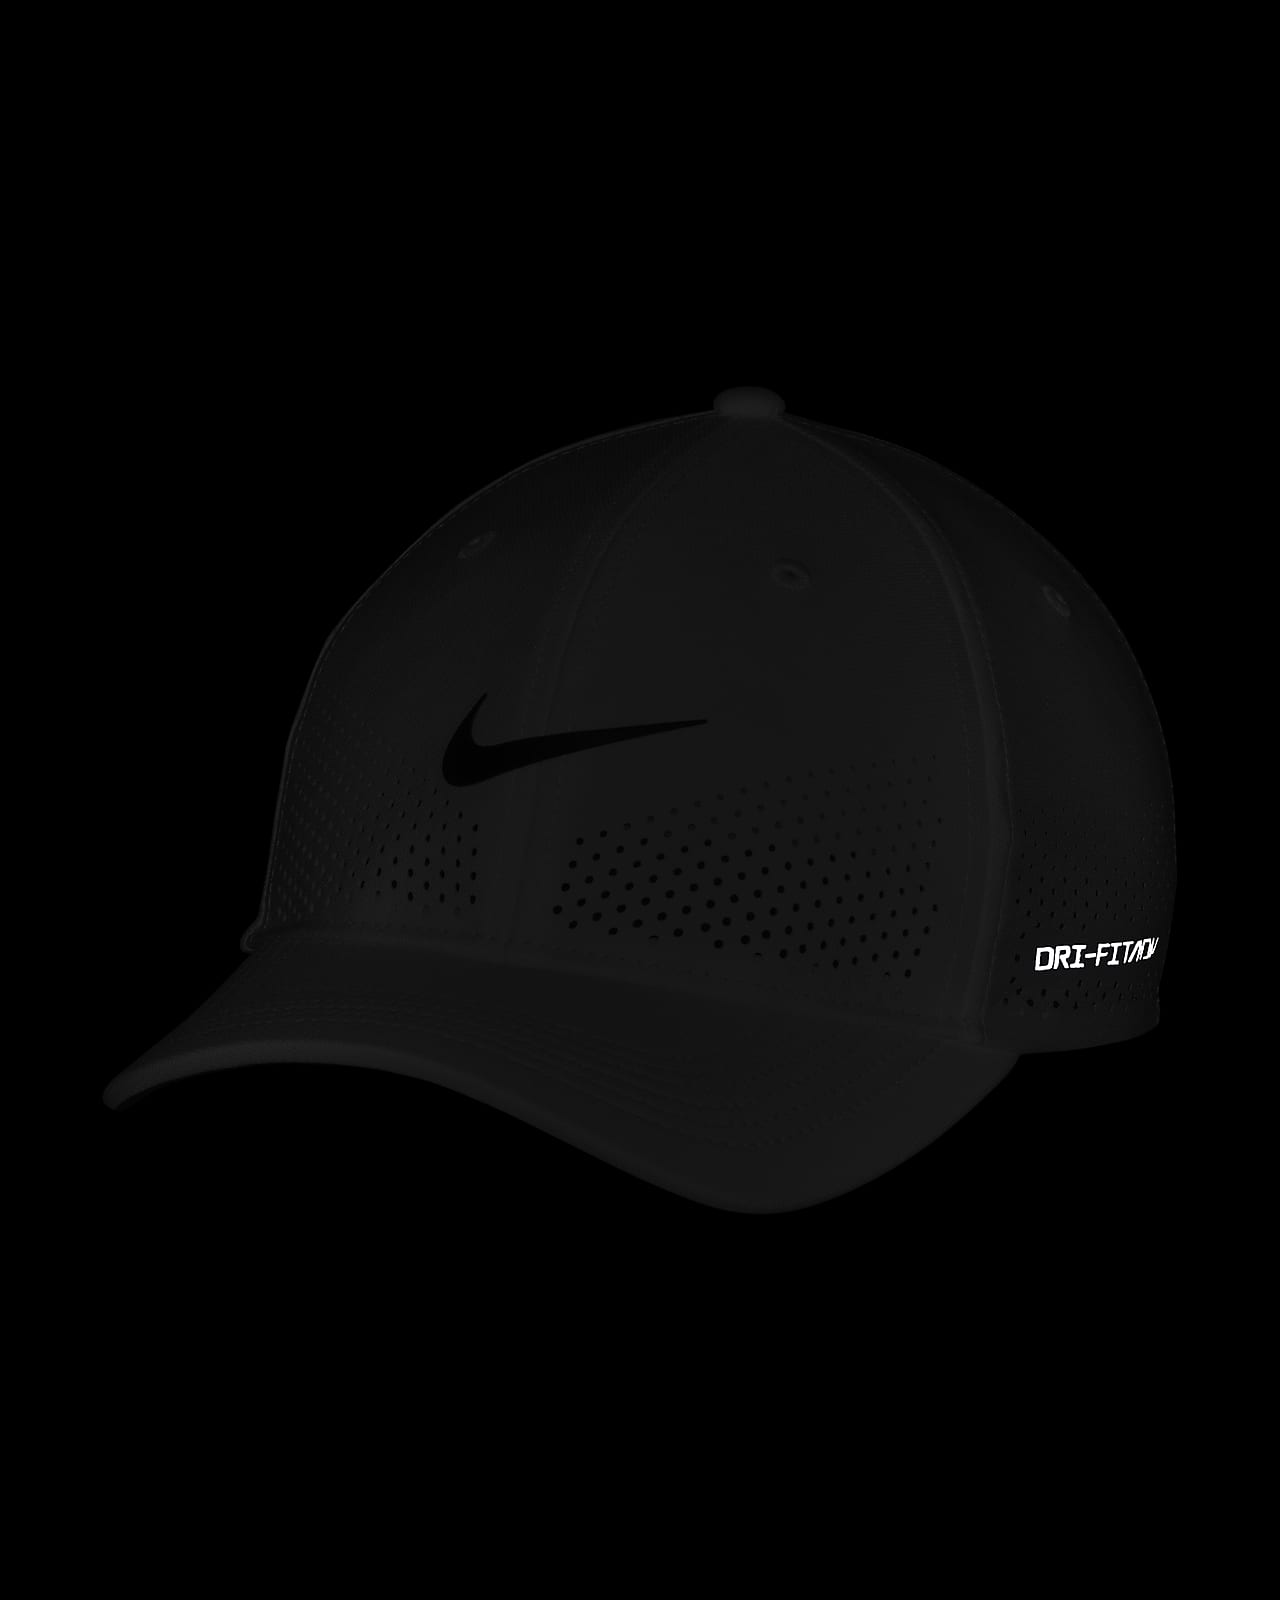 Nike Dri-FIT ADV Rise Structured SwooshFlex Cap.